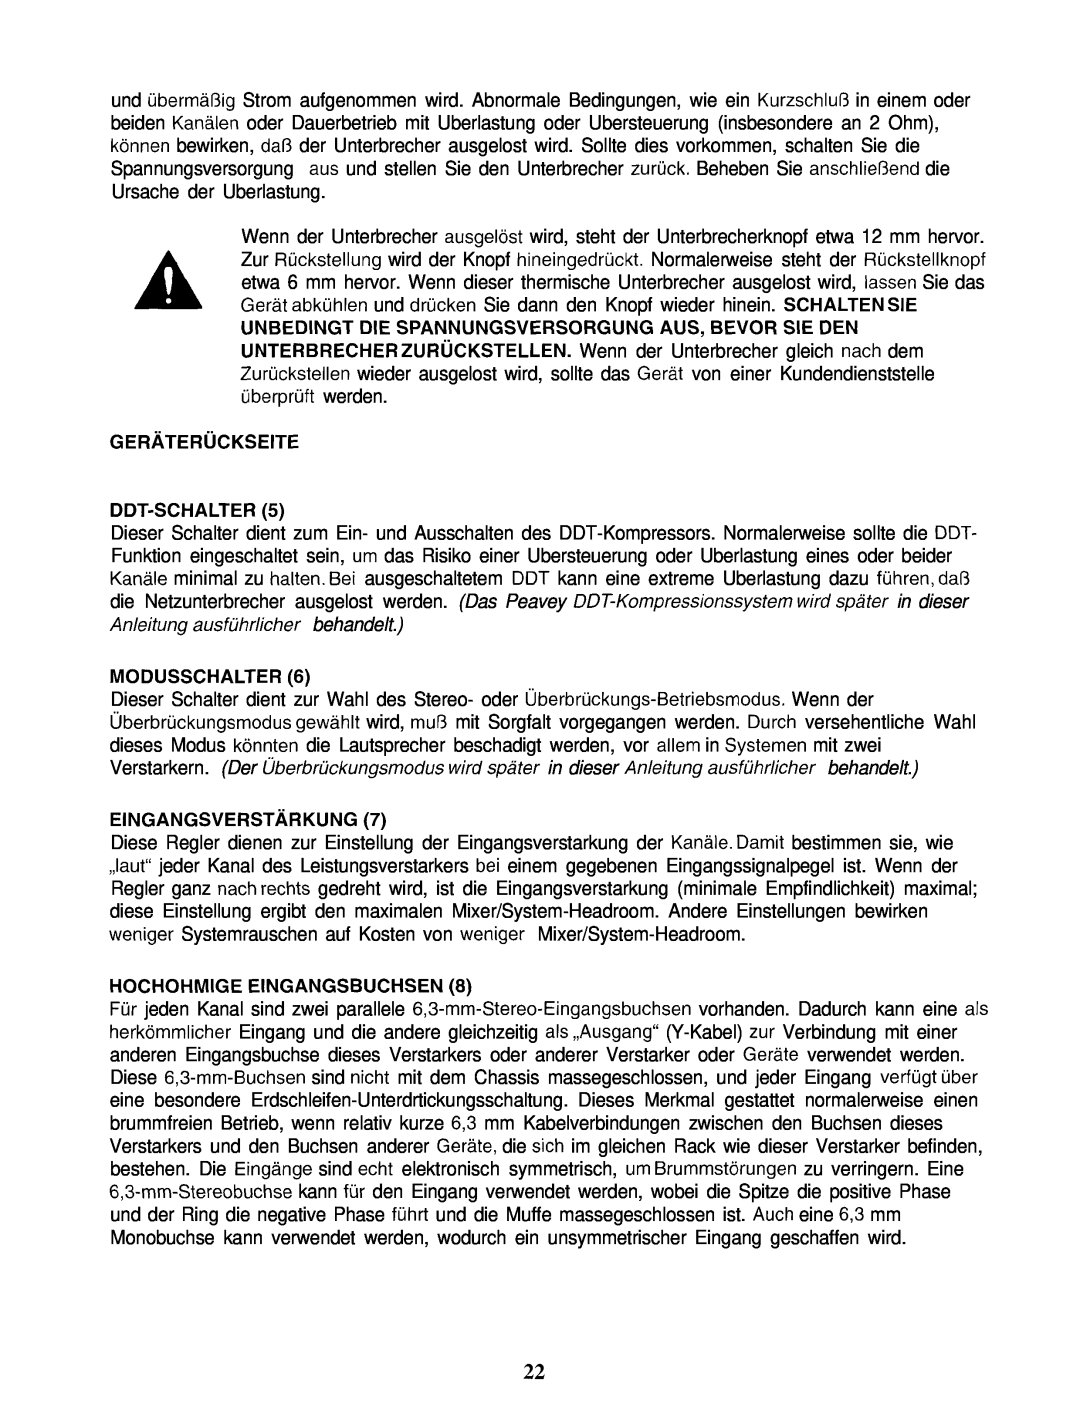 Peavey PV 2000 manual GERliTERiiCKSElTE DDT-SCHALTER5, Modusschalter, EINGANGSVERSTiiRKUNG, Hochohmige Eingangsbuchsen 